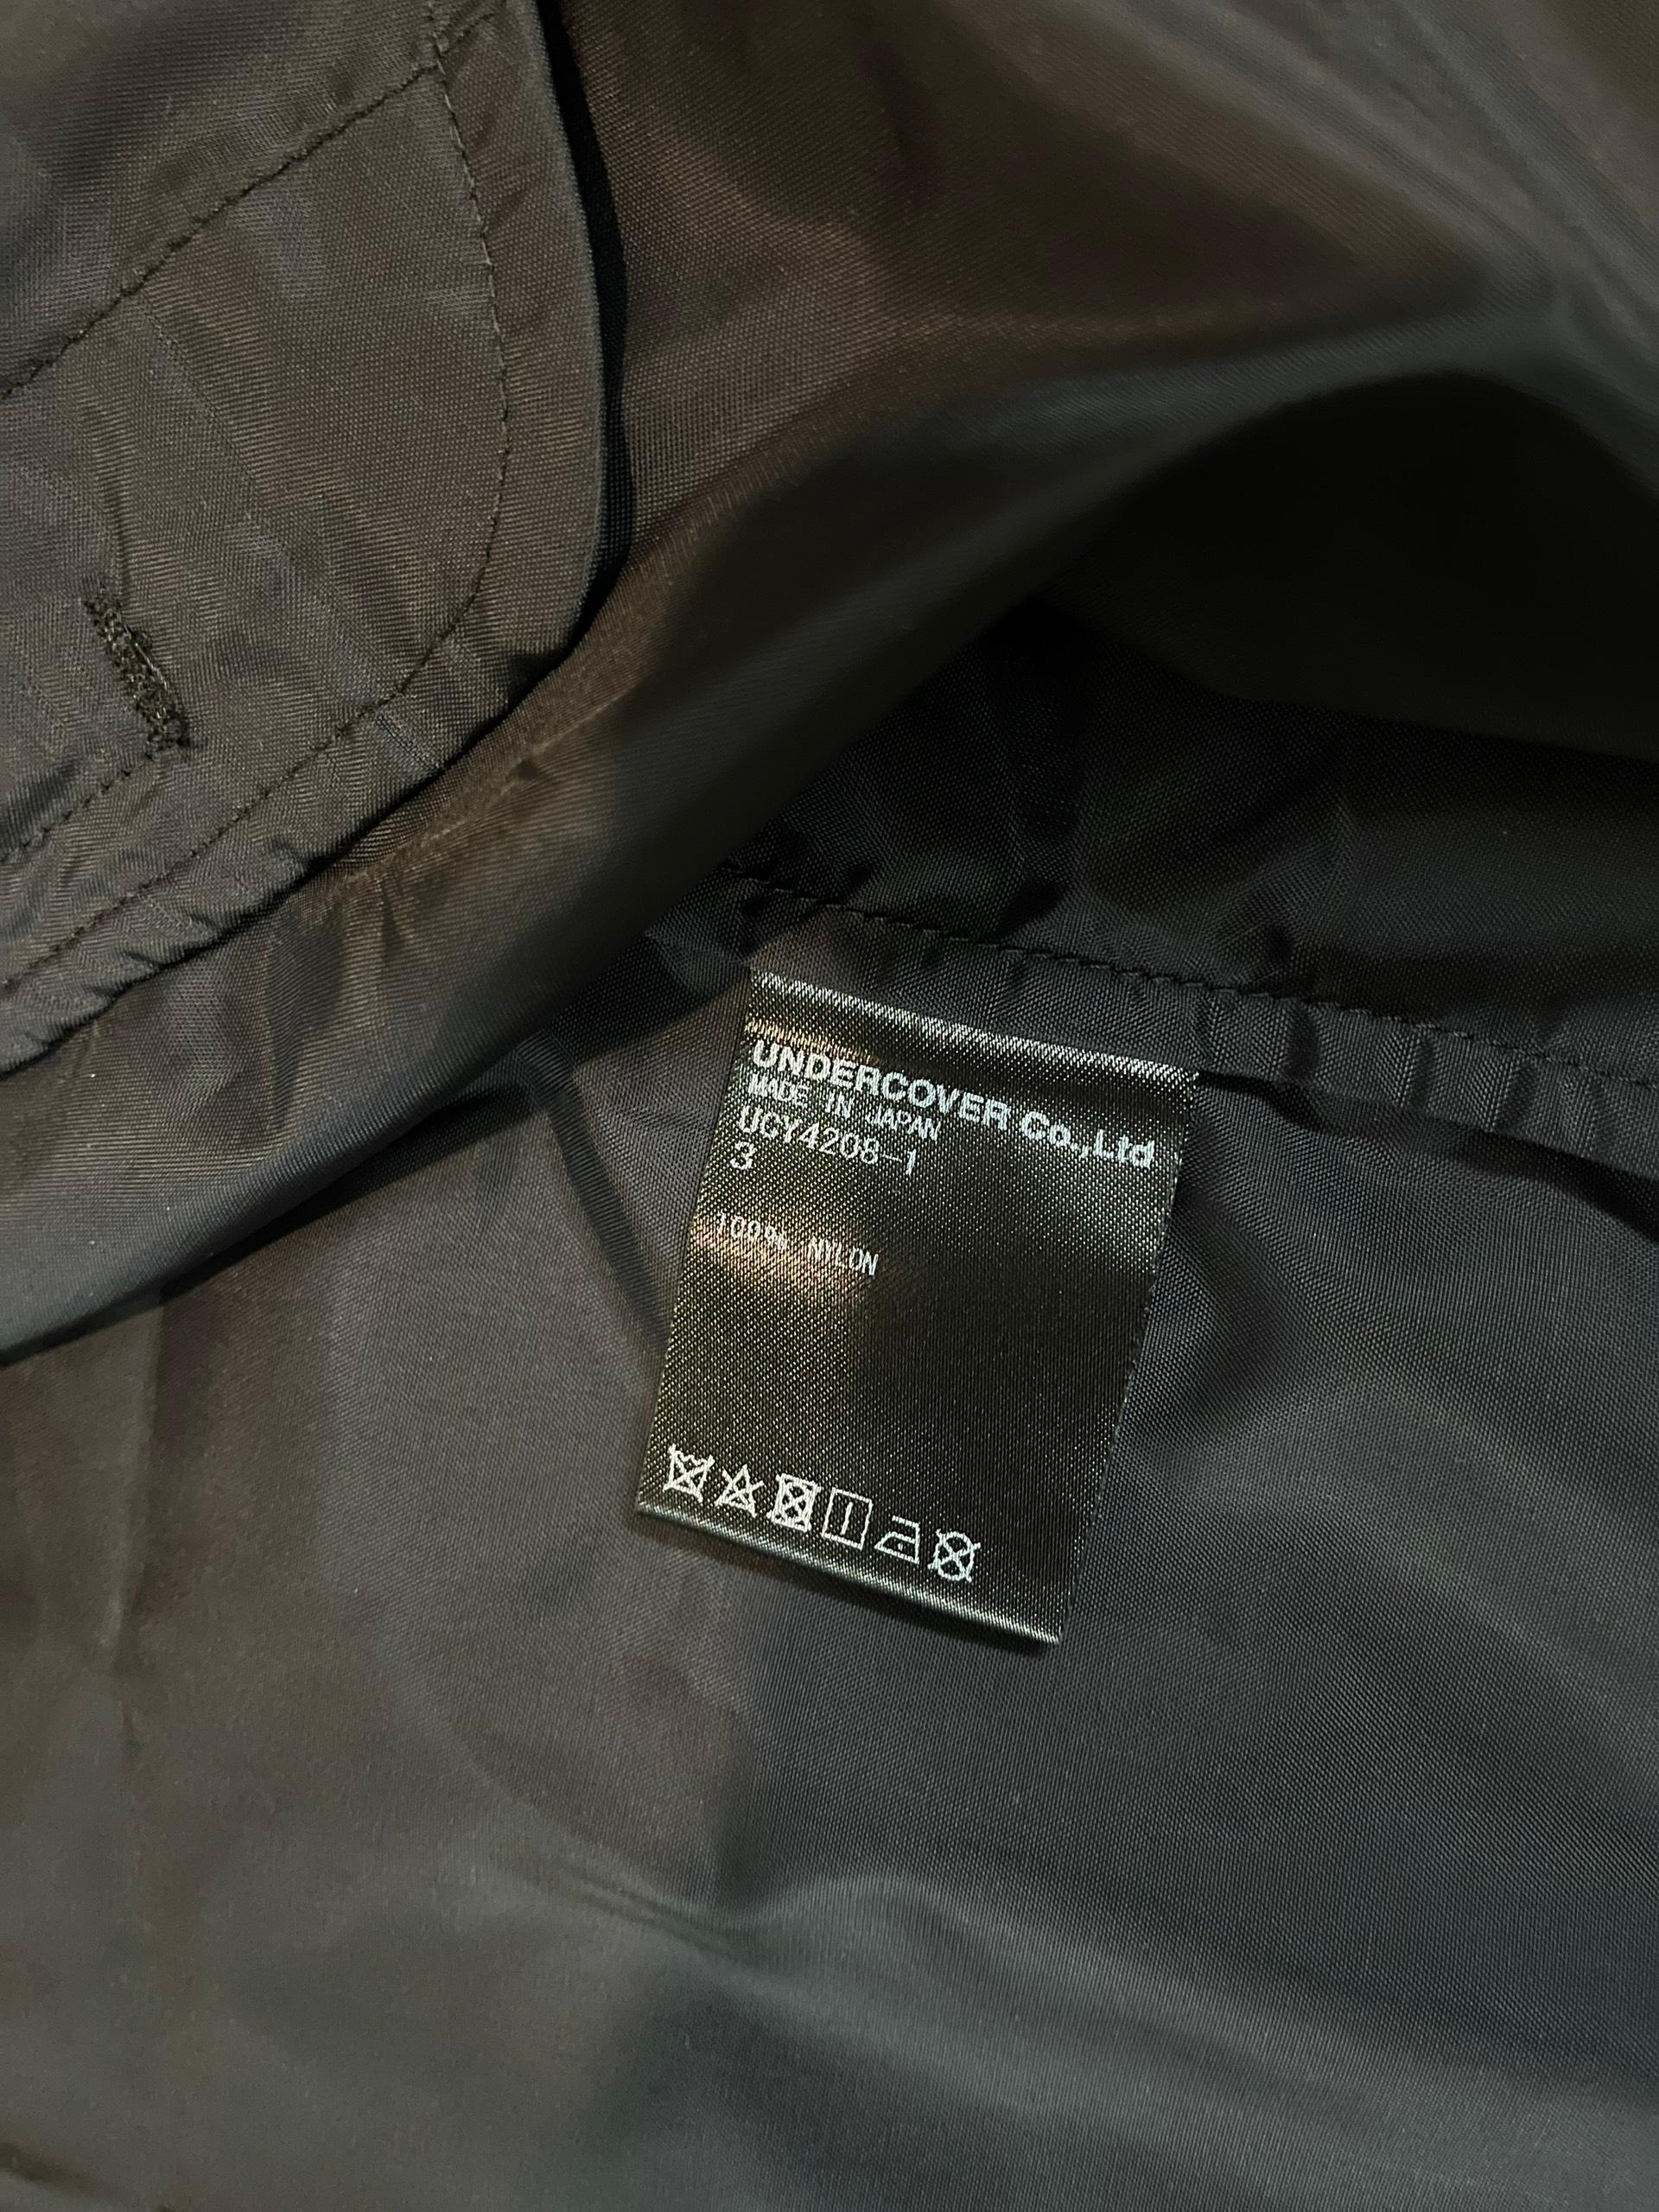 Undercover x Cindy Sherman - Veste en nylon à manches courtes S/S2020 en vente 2